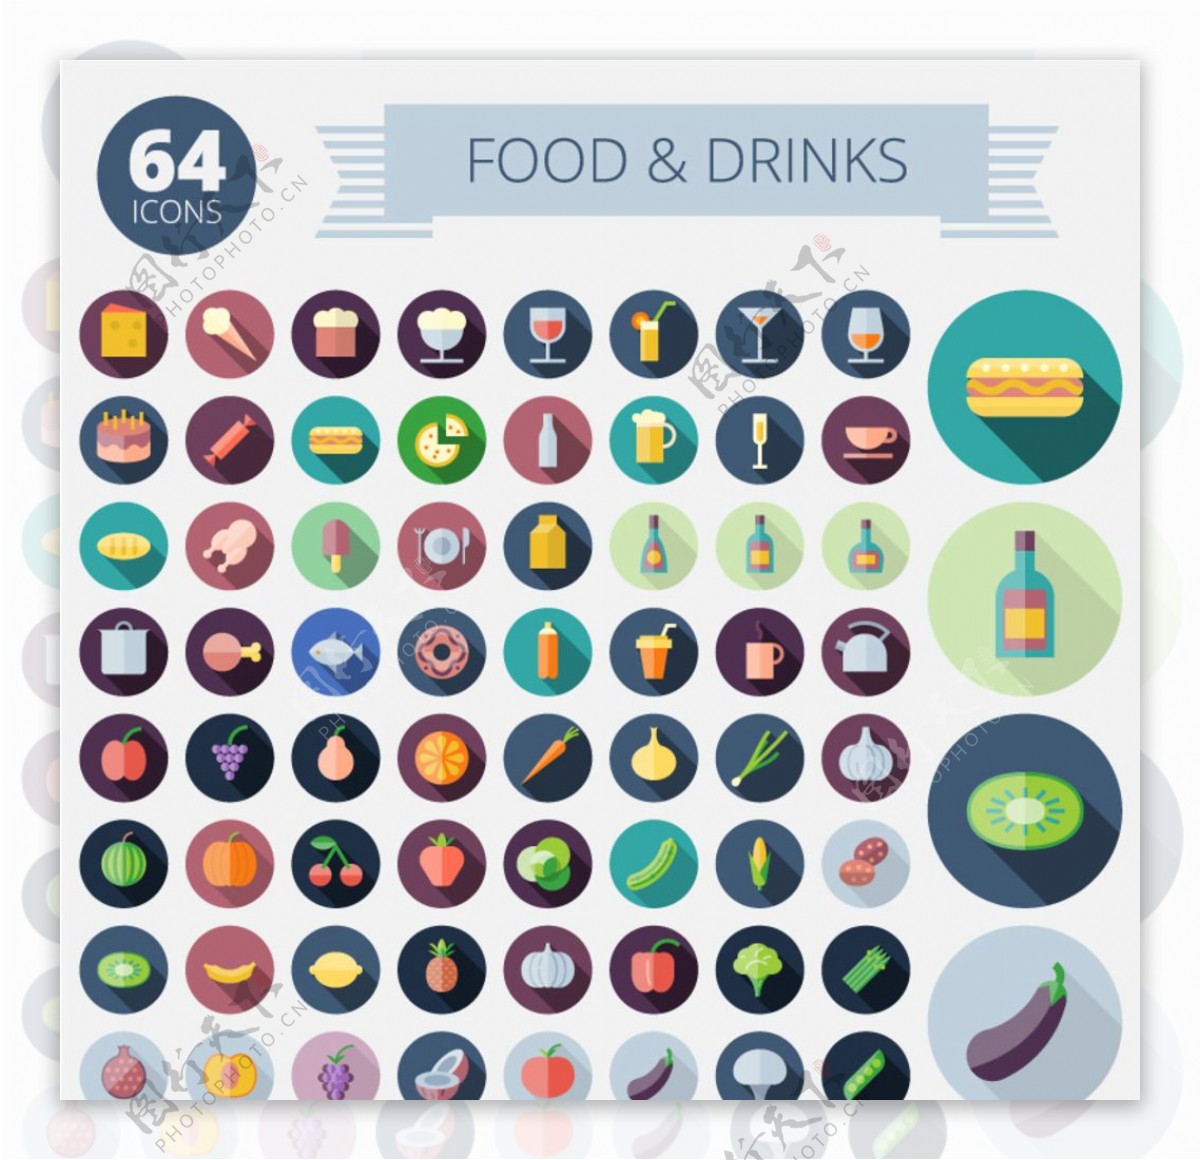 食物与饮品图标